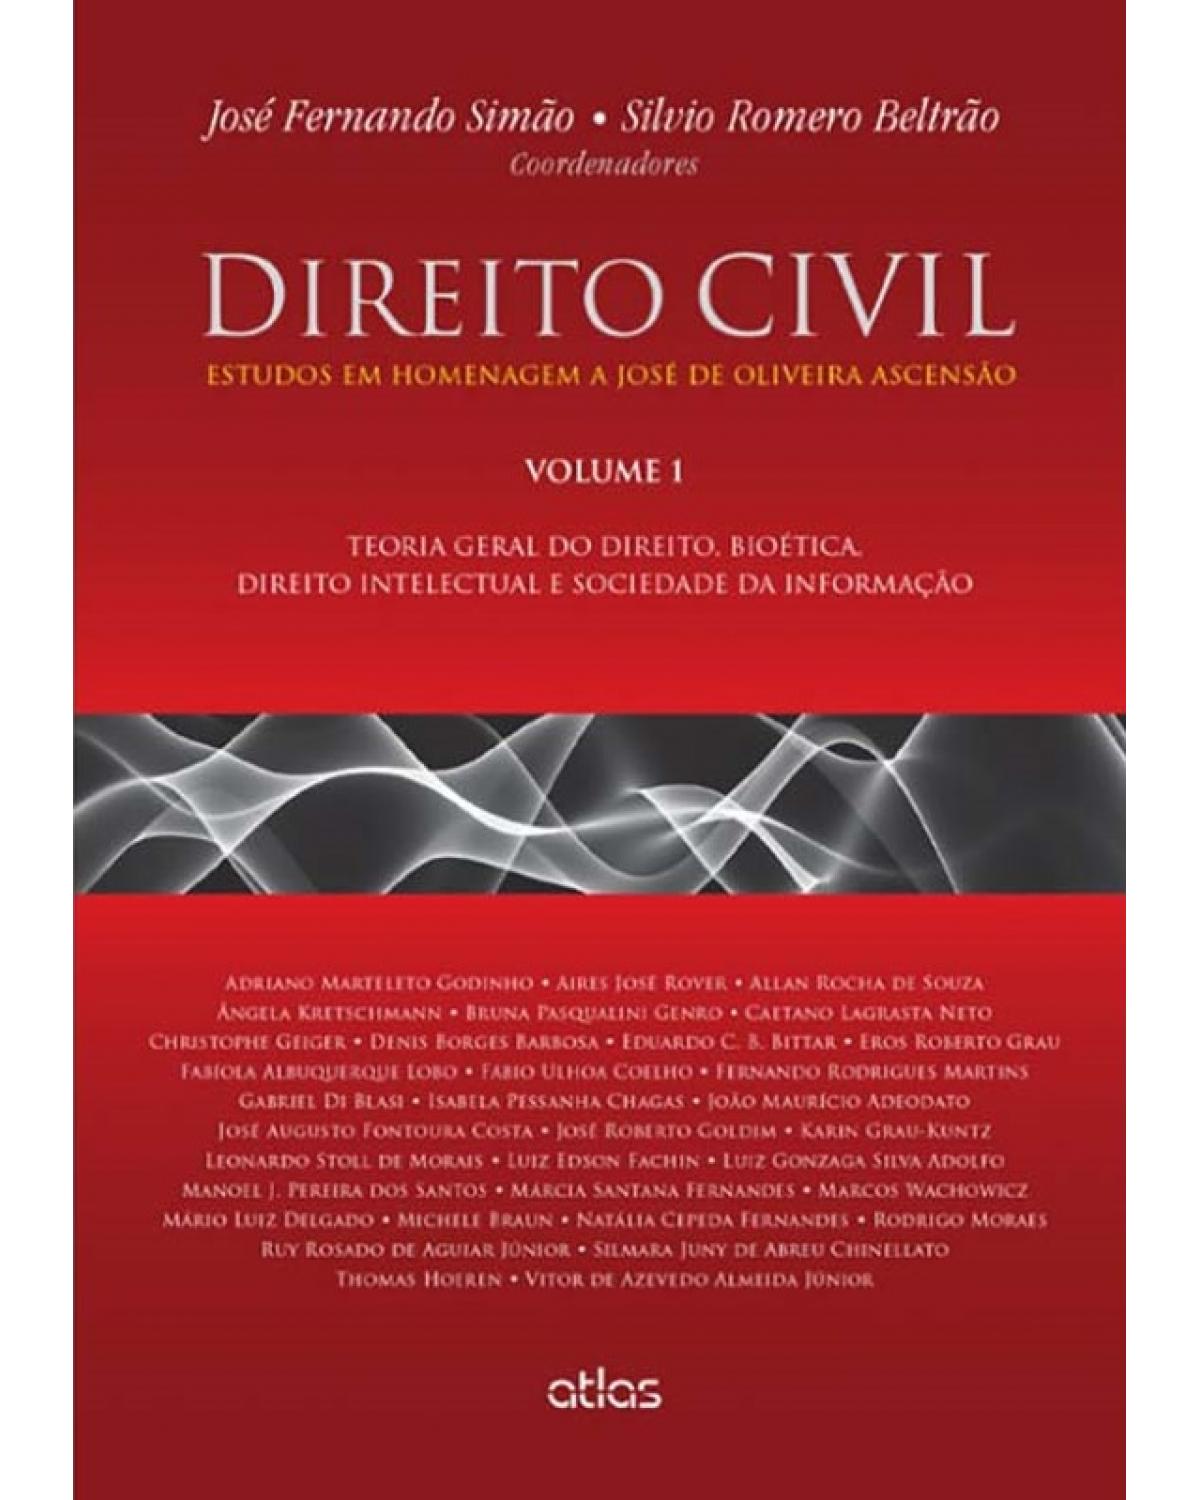 Direito civil - Volume 1: Estudos em homenagem a José de Oliveira Ascensão - Teoria geral do direito, bioética, direito intelectual e sociedade da informação - 1ª Edição | 2015